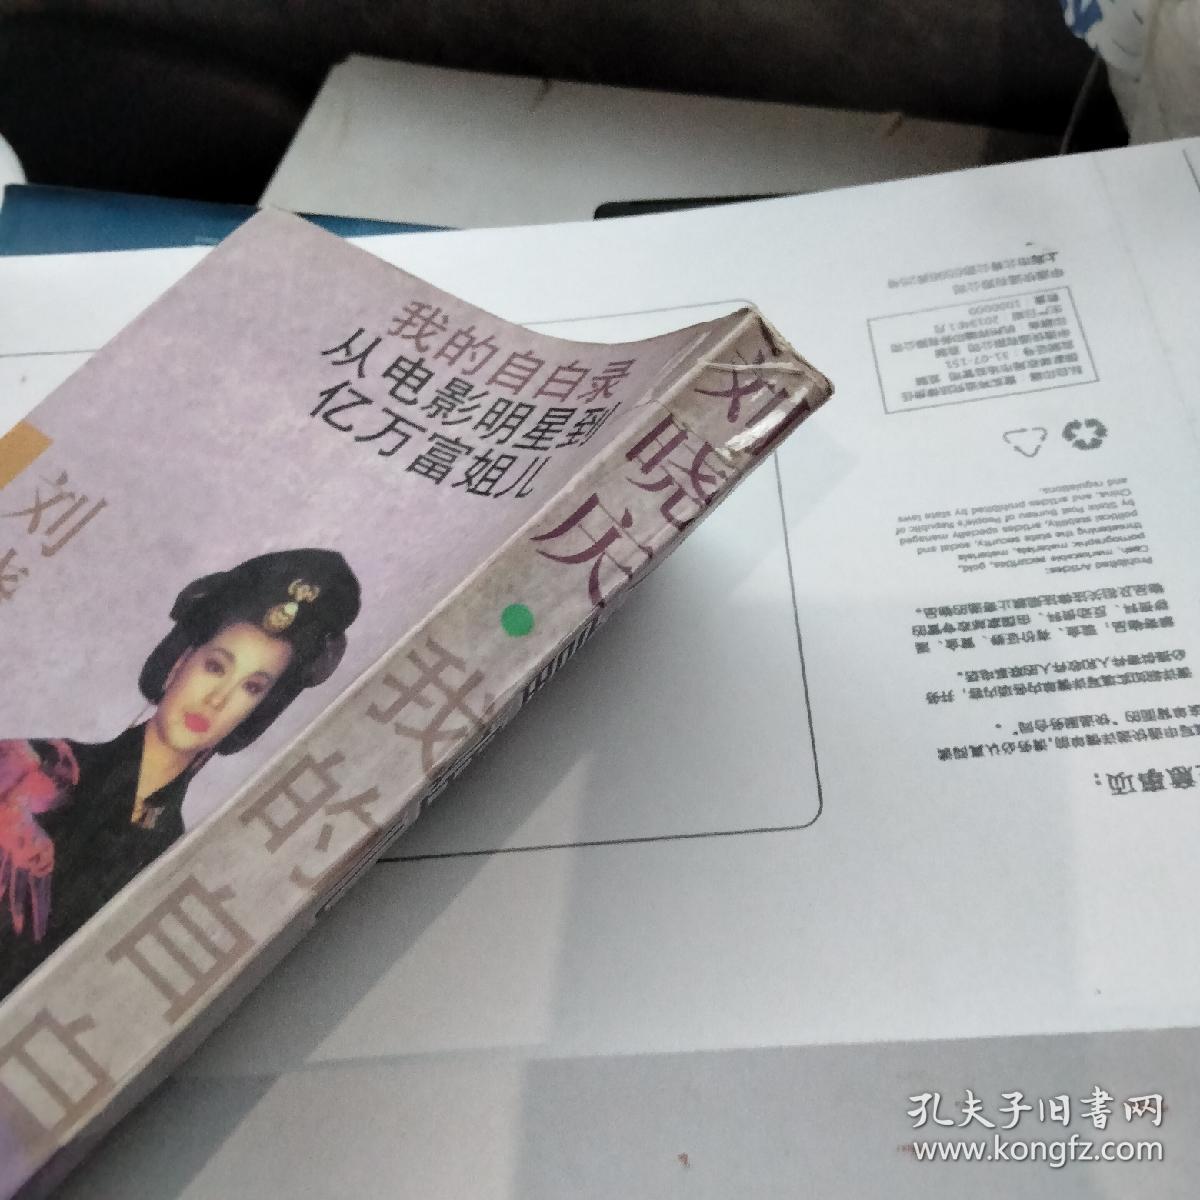 刘晓庆我的 自白录:从电影明星到亿万富姐儿